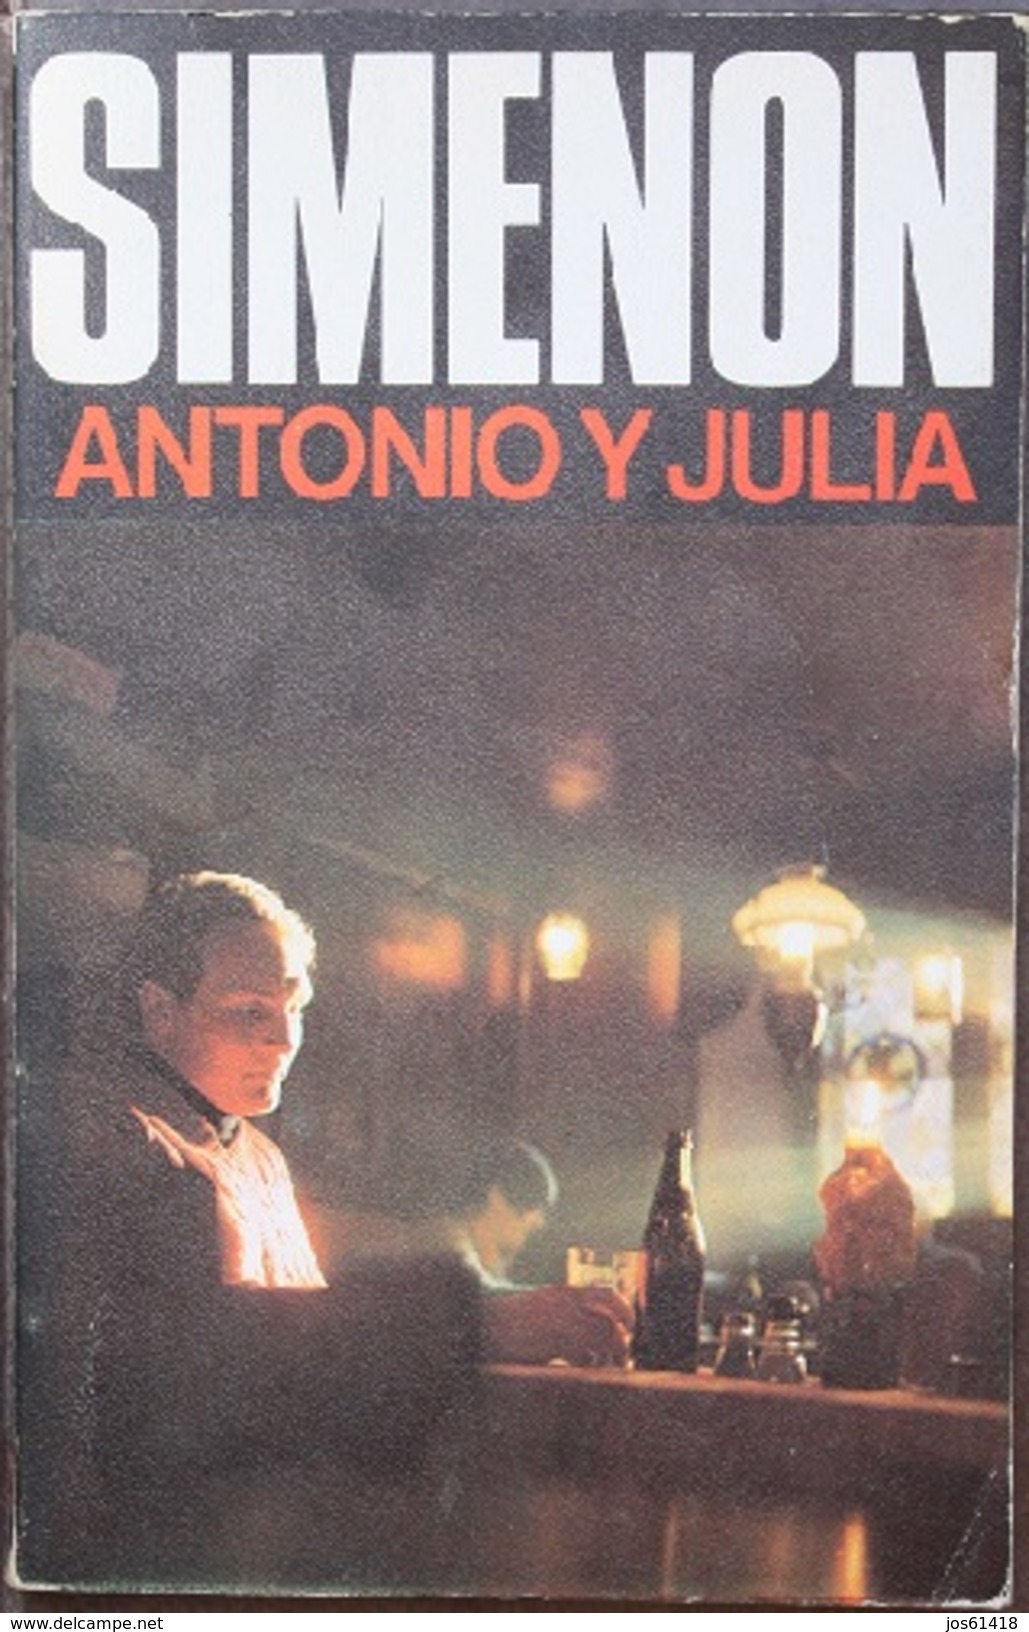 Antonio Y Julia  - George Simenón     Las Novelas De Simenón  Nº 60 - Acción, Aventuras